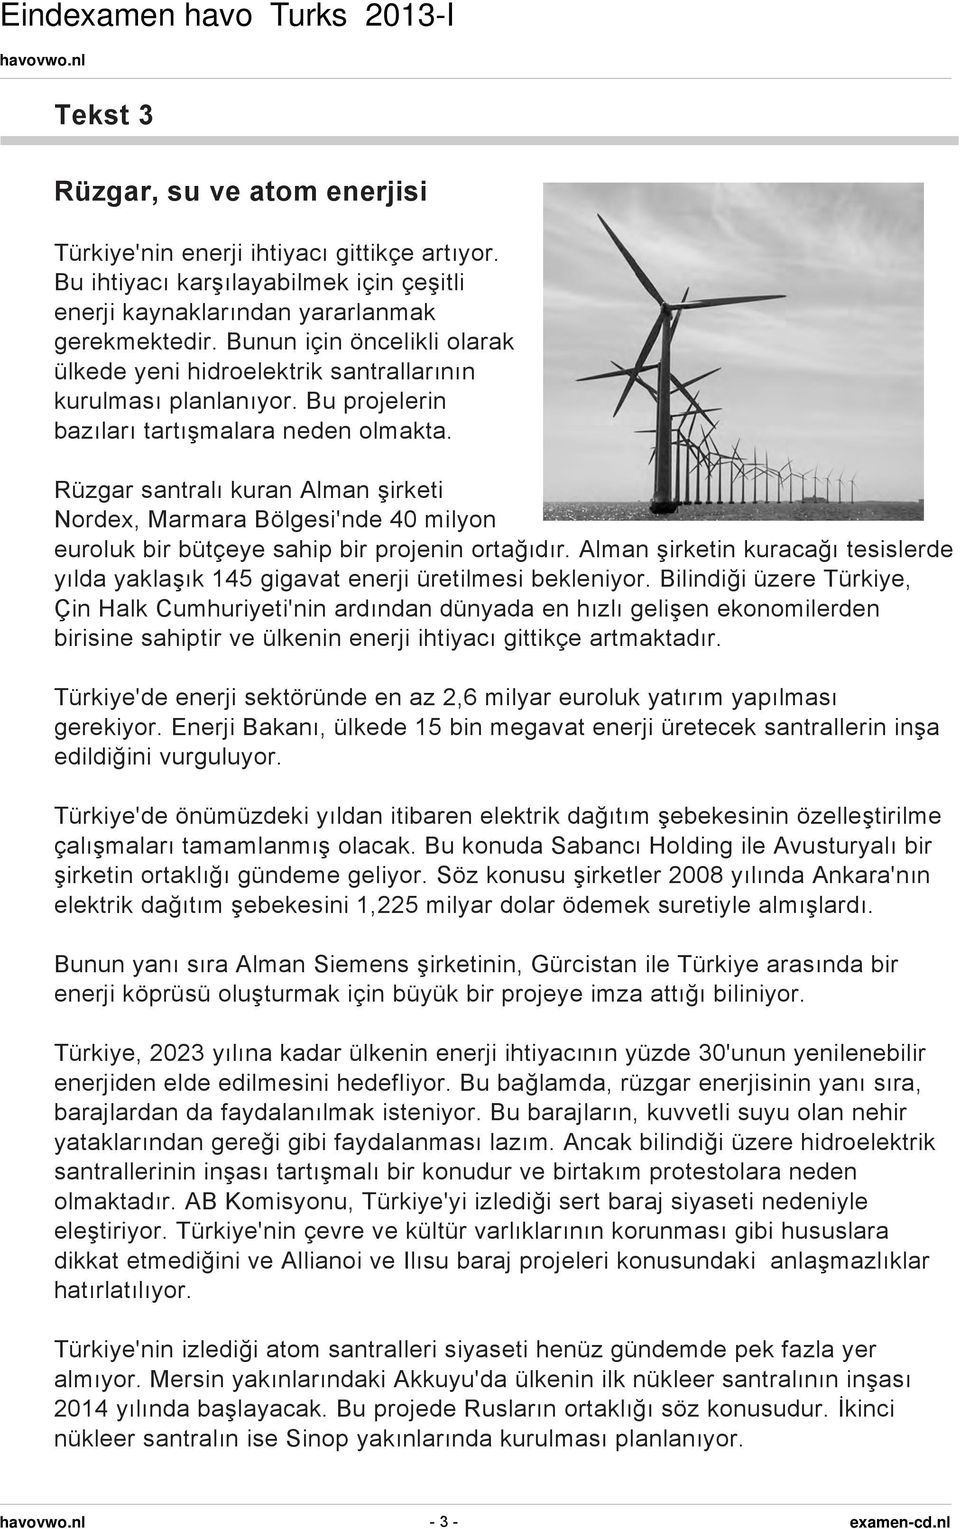 Rüzgar santralı kuran Alman şirketi Nordex, Marmara Bölgesi'nde 40 milyon euroluk bir bütçeye sahip bir projenin ortağıdır.